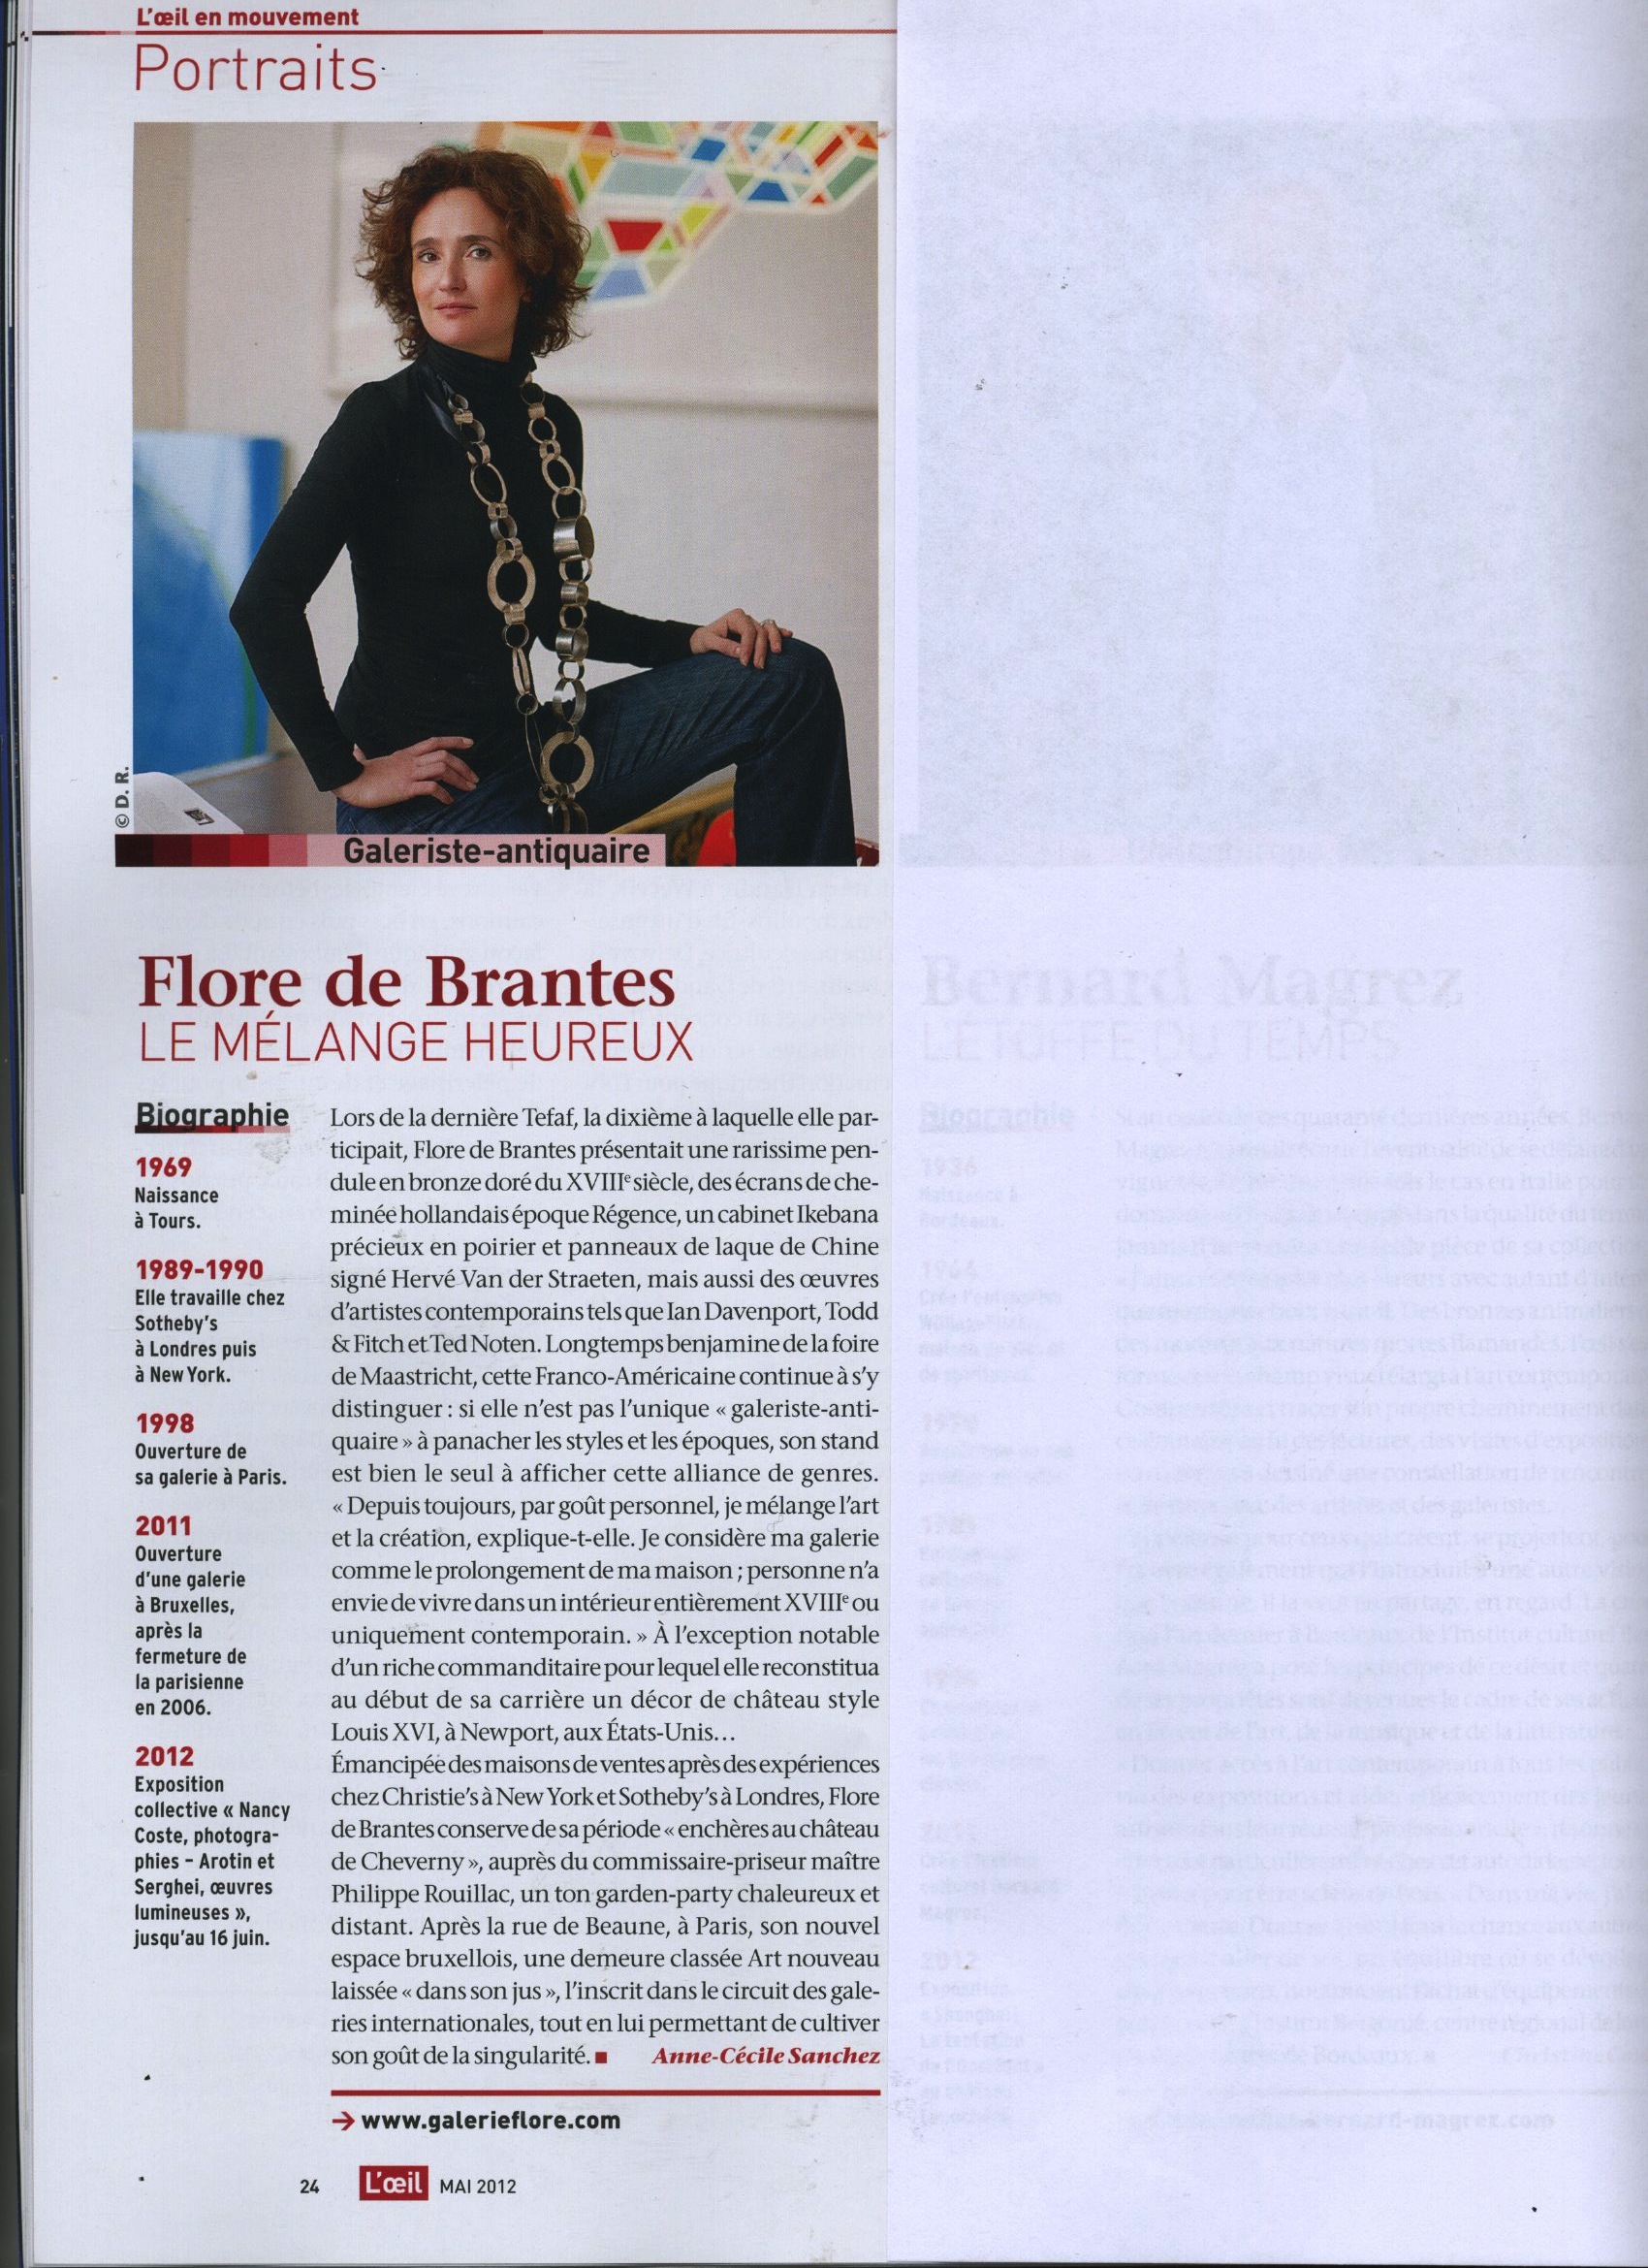 2012-Portrait-Flore-de-Brantes